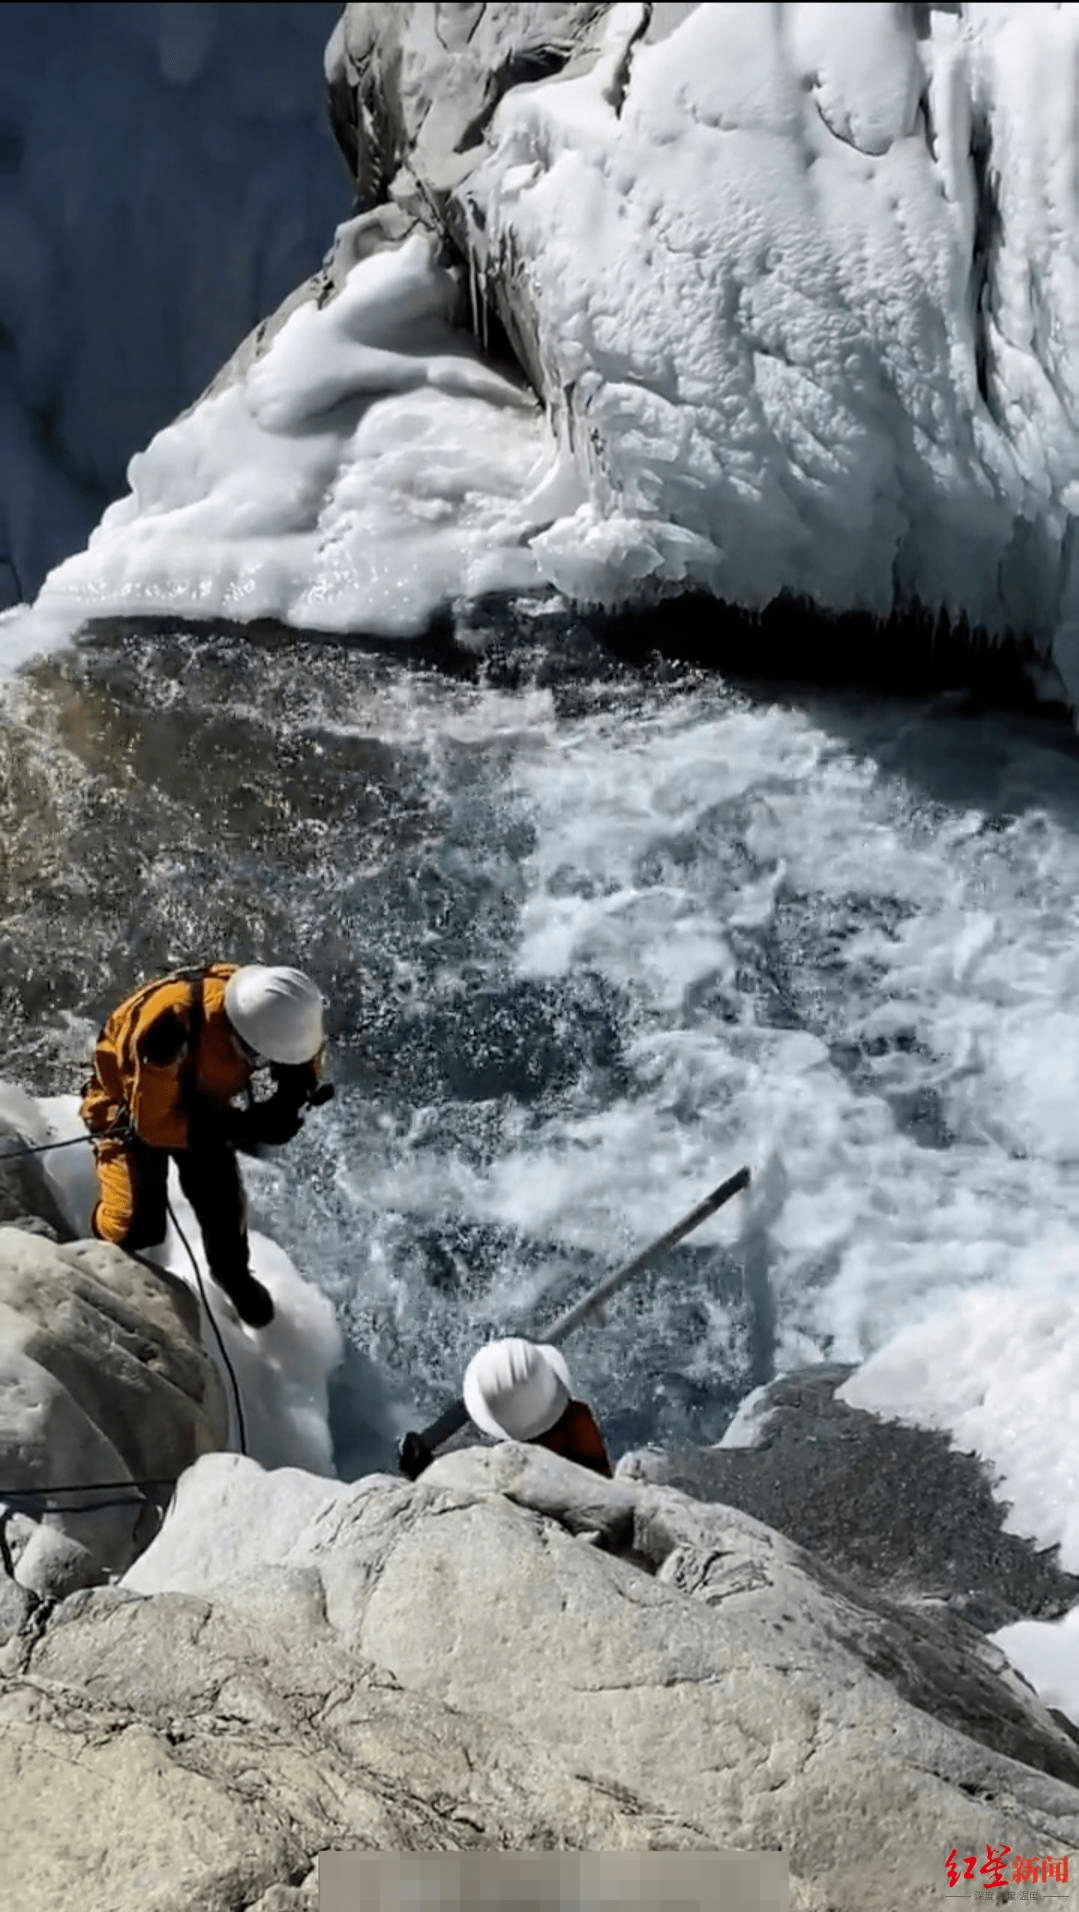 “冰川哥坠落冰瀑”追踪：“能找的地方都找了” 救援队深入瀑布未能找到他